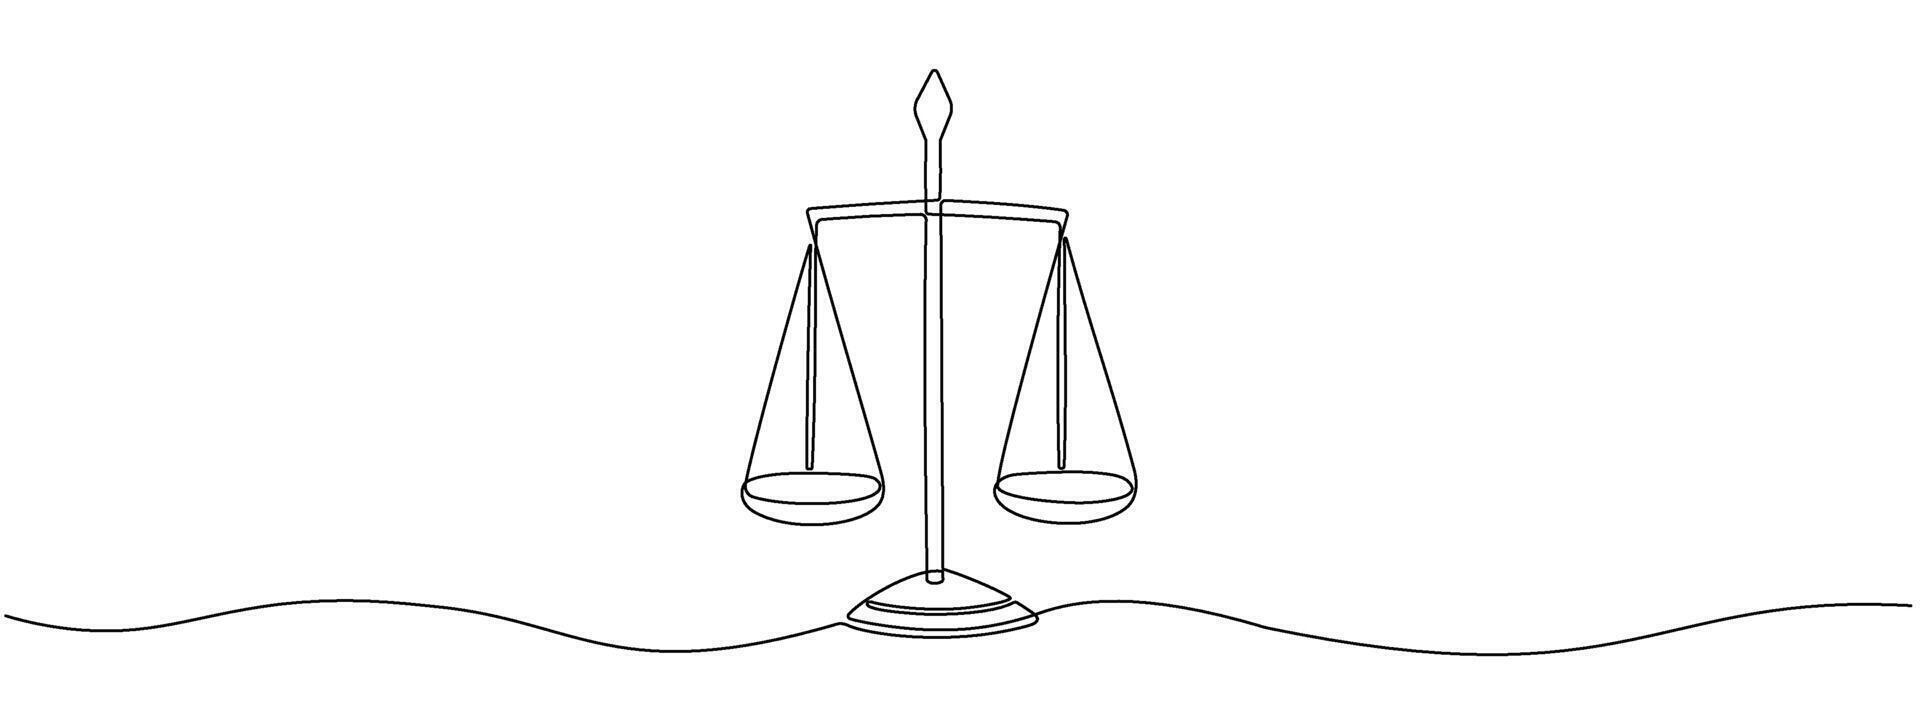 continuo dibujo de un soltero editable línea de escamas con bochas. simplificado escamas de justicia icono. símbolo de balance, legal ley. ilustración vector